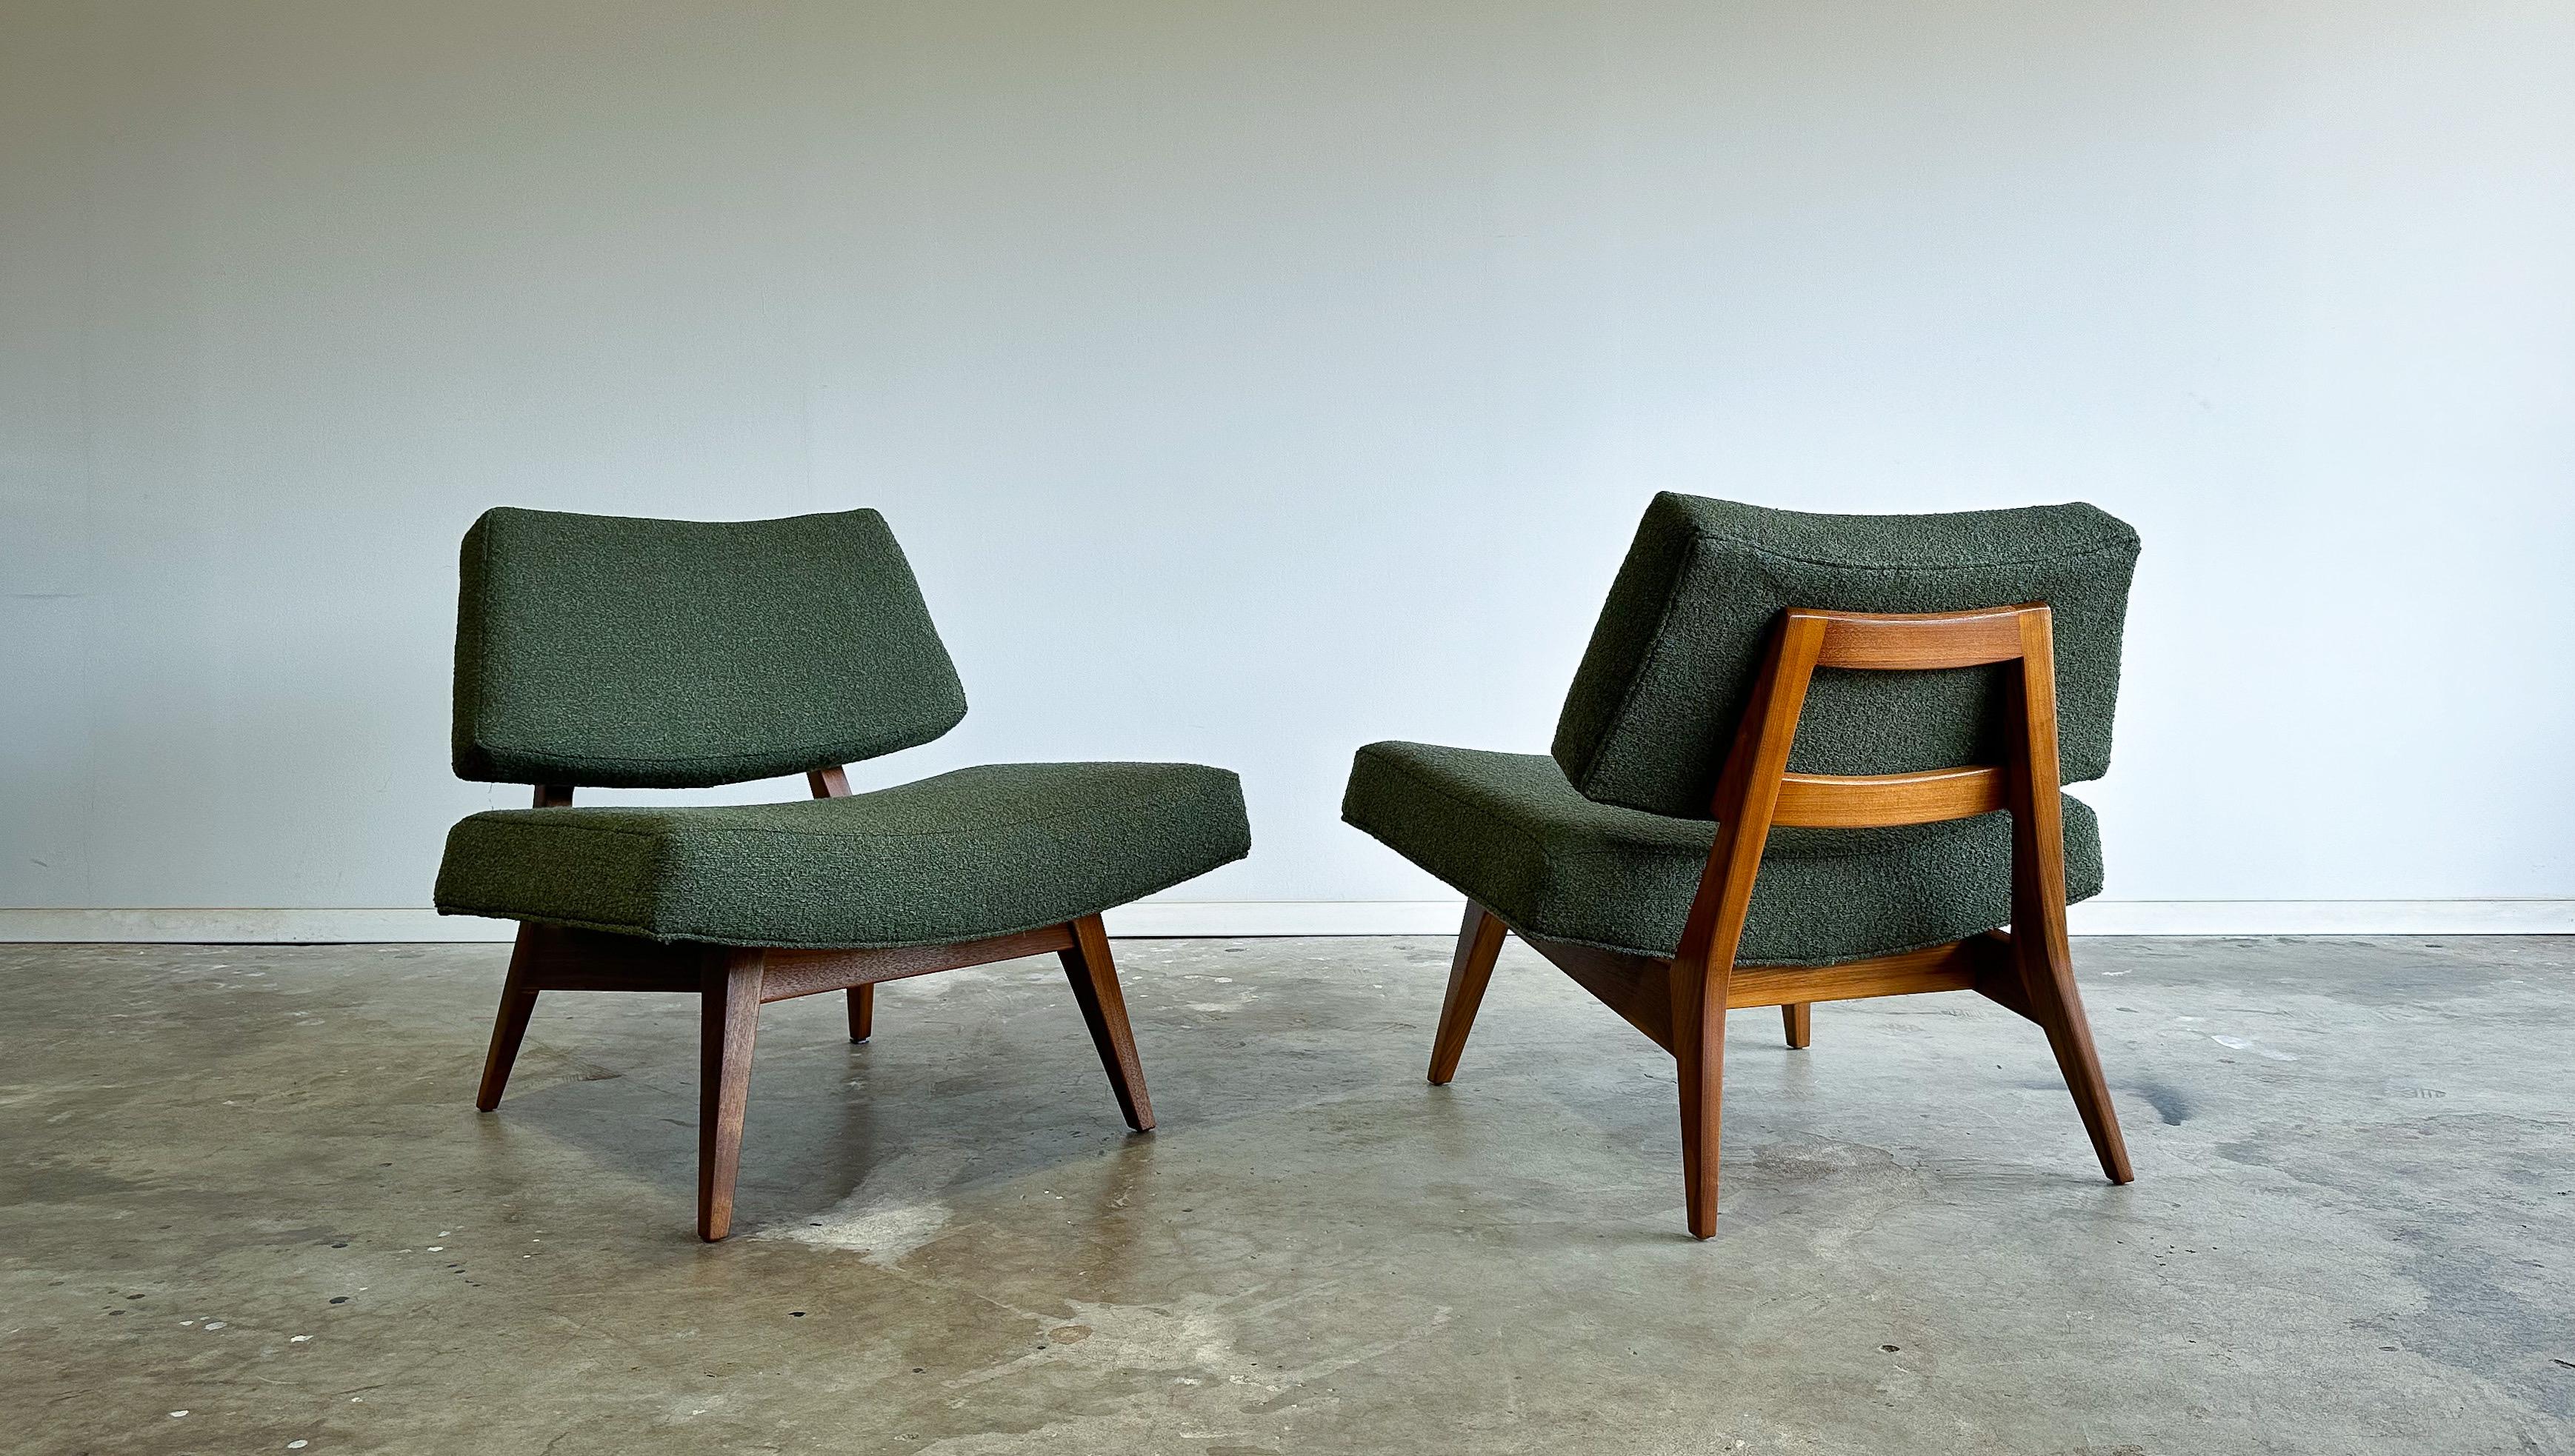 Il s'agit d'une rare paire de chaises basses conçues par Jens Risom pour Risom Designs, Inc. vers 1952.

Basses, profondes et larges, ces chaises ont une présence et un niveau de confort étonnants. Les cadres en noyer massif sculpté, entièrement